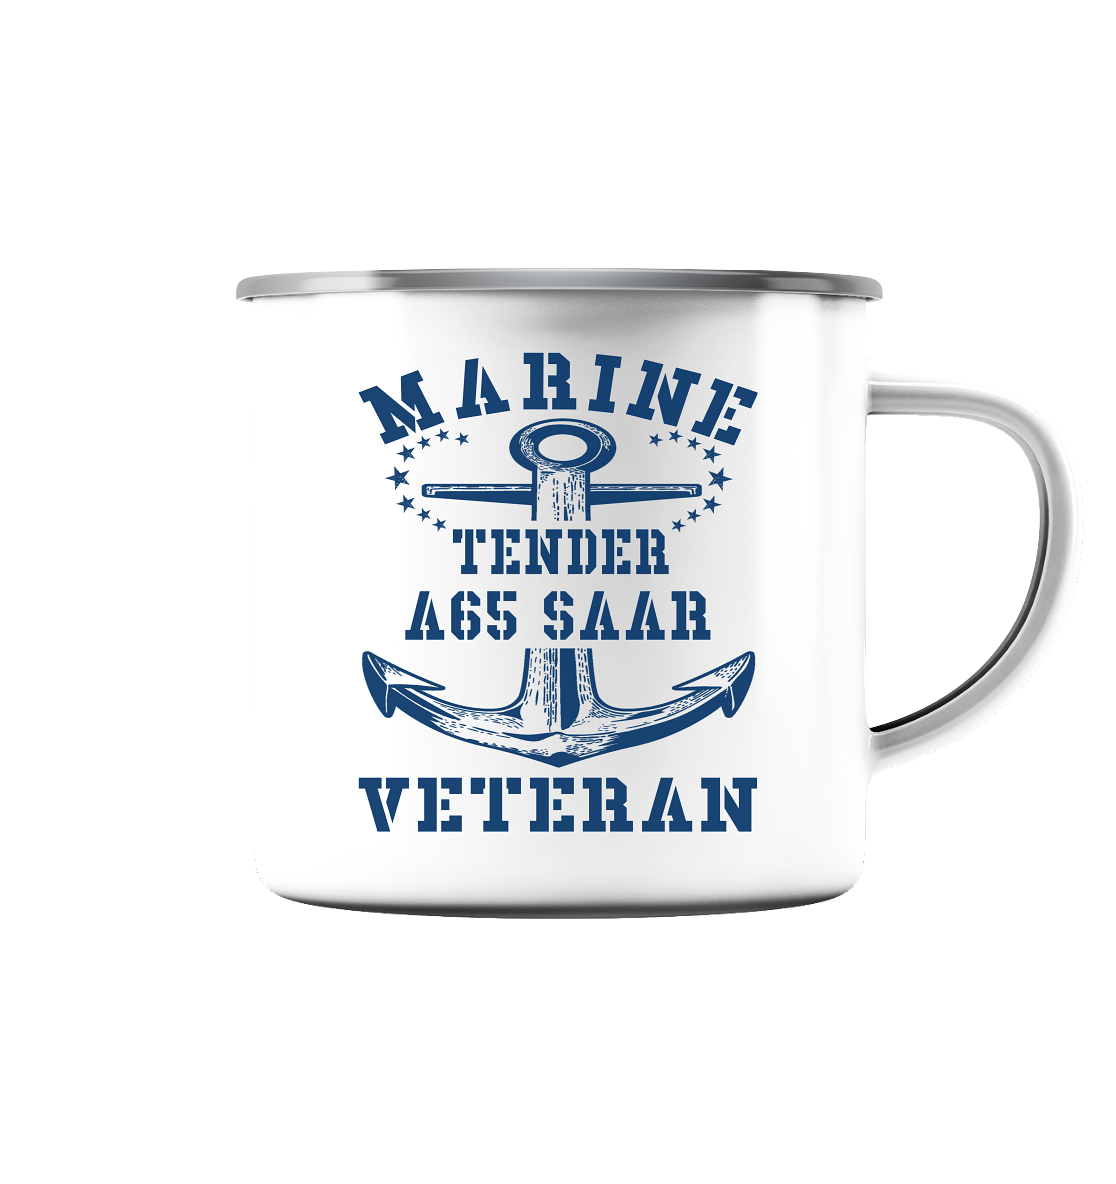 Tender A65 SAAR Marine Veteran - Emaille Tasse (Silber)